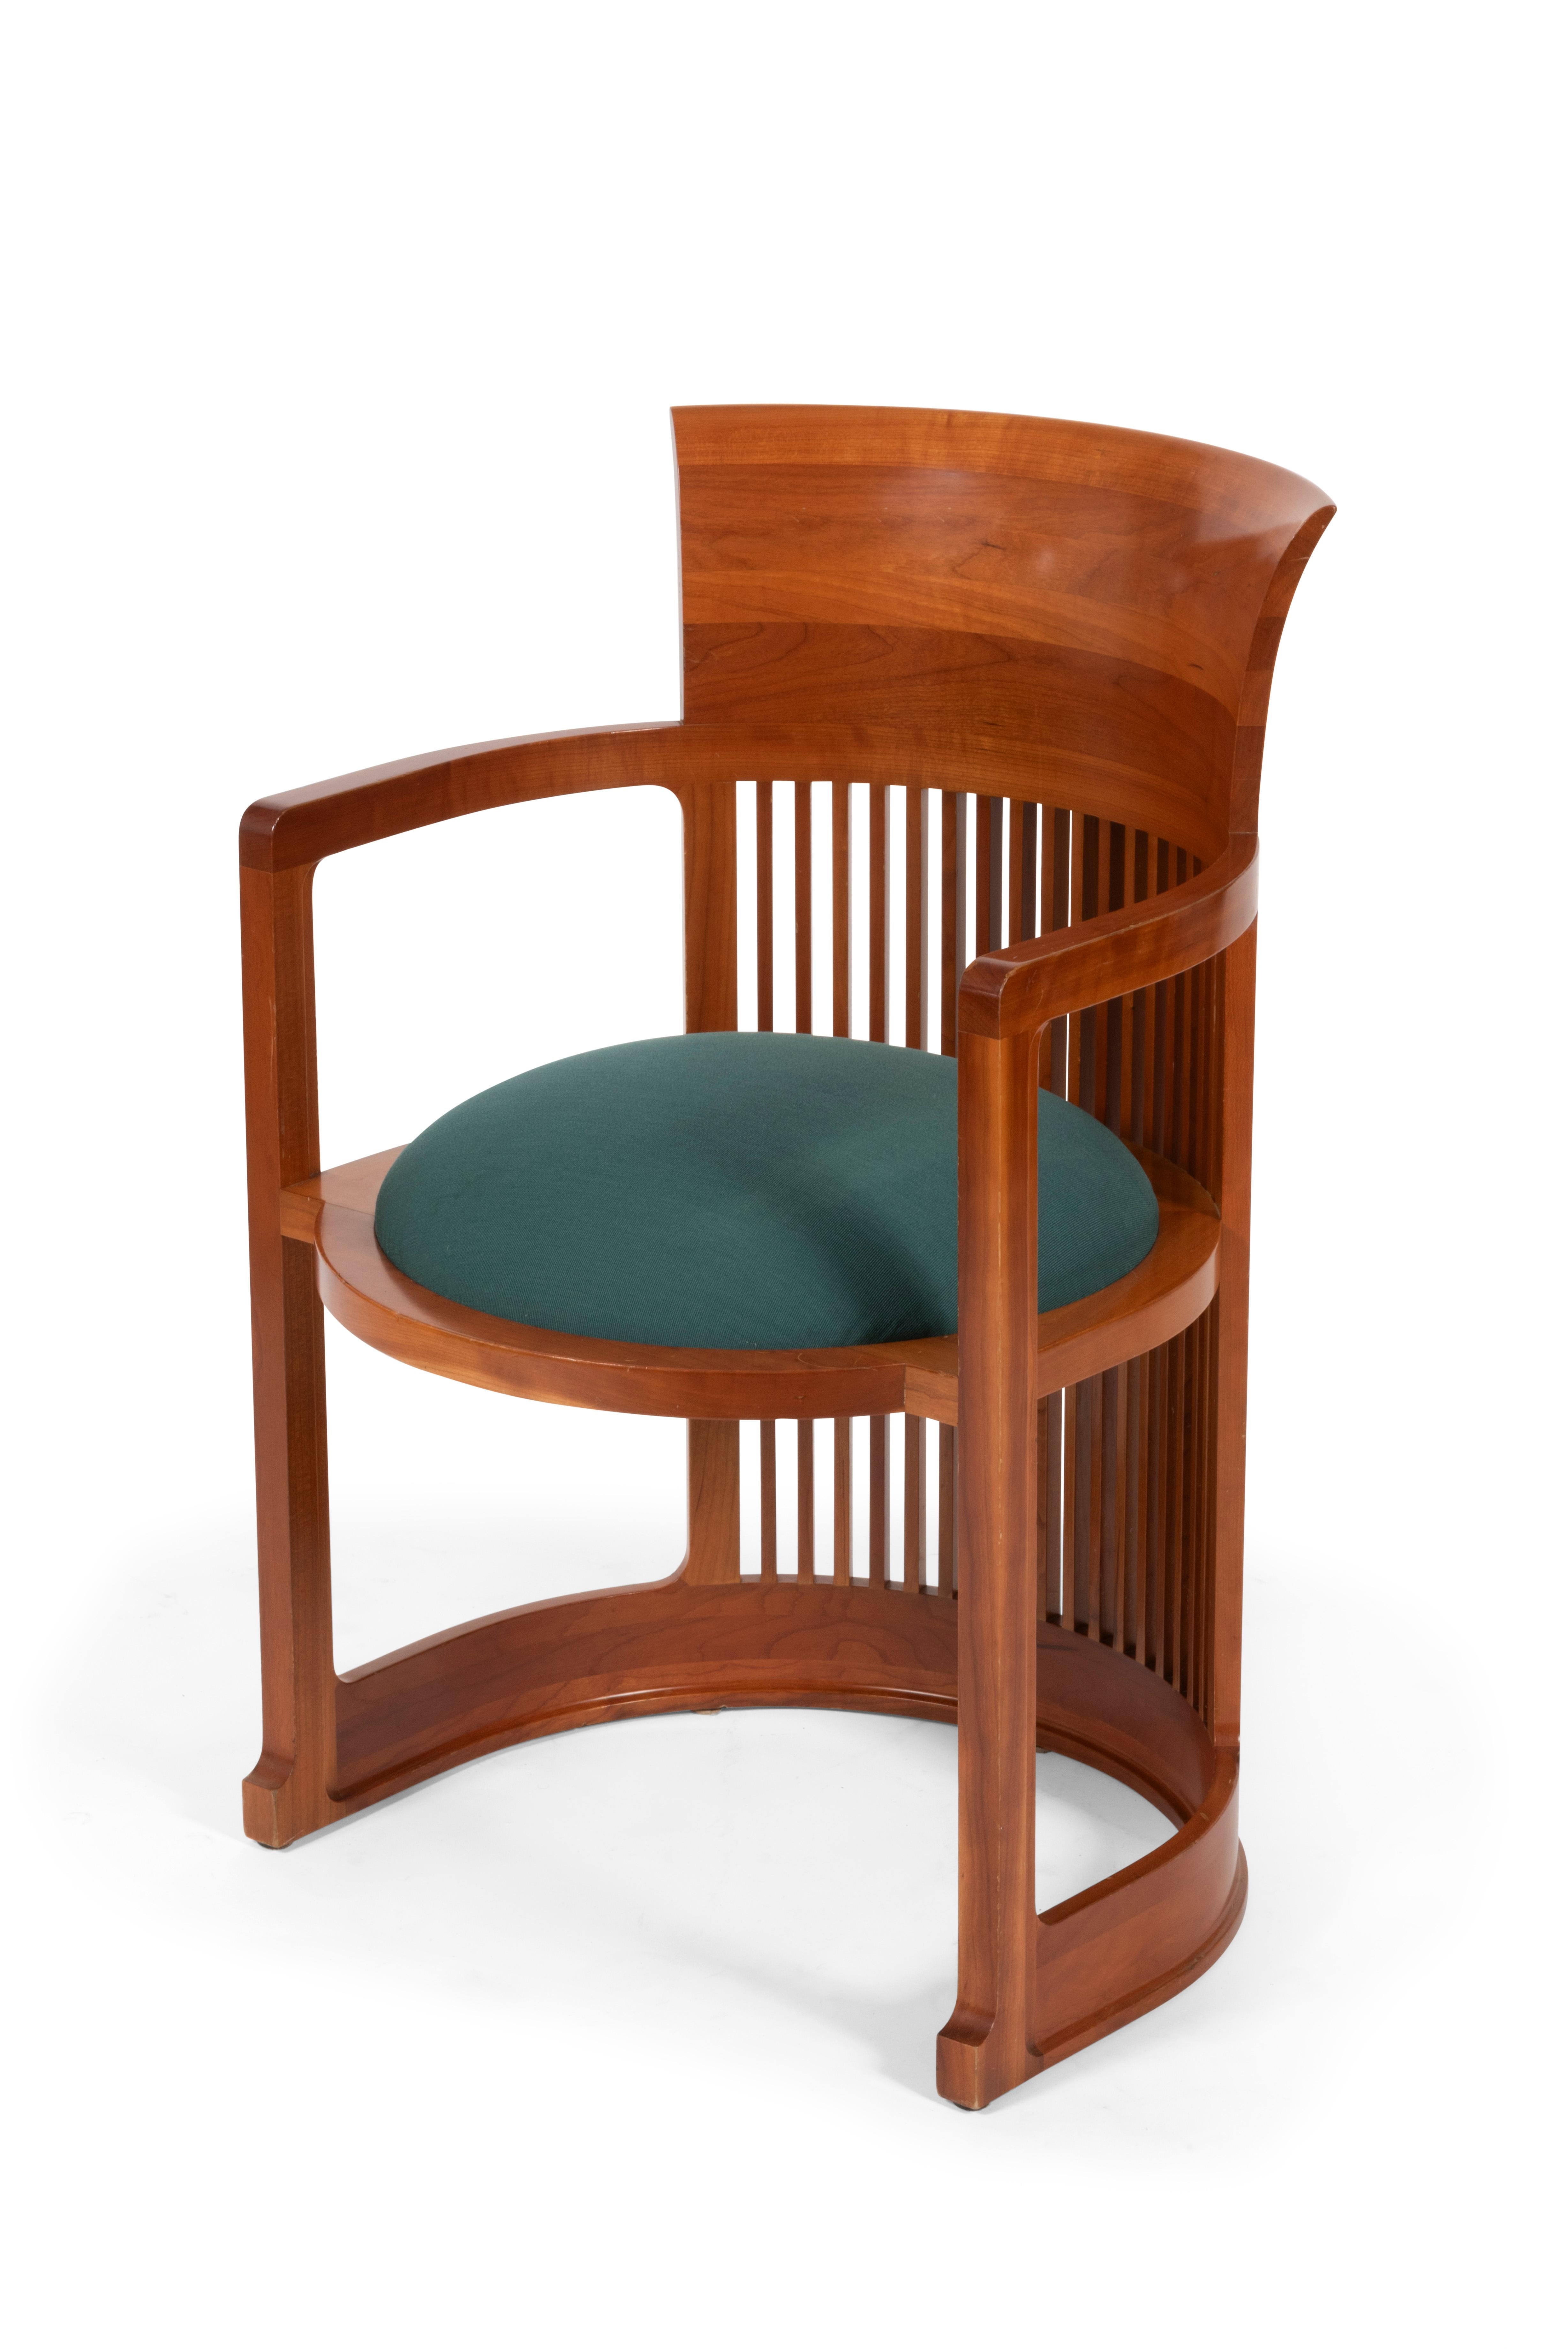 Dieses unentbehrliche Möbelstück der Arts & Crafts-Bewegung vom Anfang des XX. Jahrhunderts, das die Form eines Balkens hat, wurde 1904 vom Architekten Frank Lloyd Wright erfunden und in den 80er Jahren von Cassina überarbeitet.

Die Struktur aus